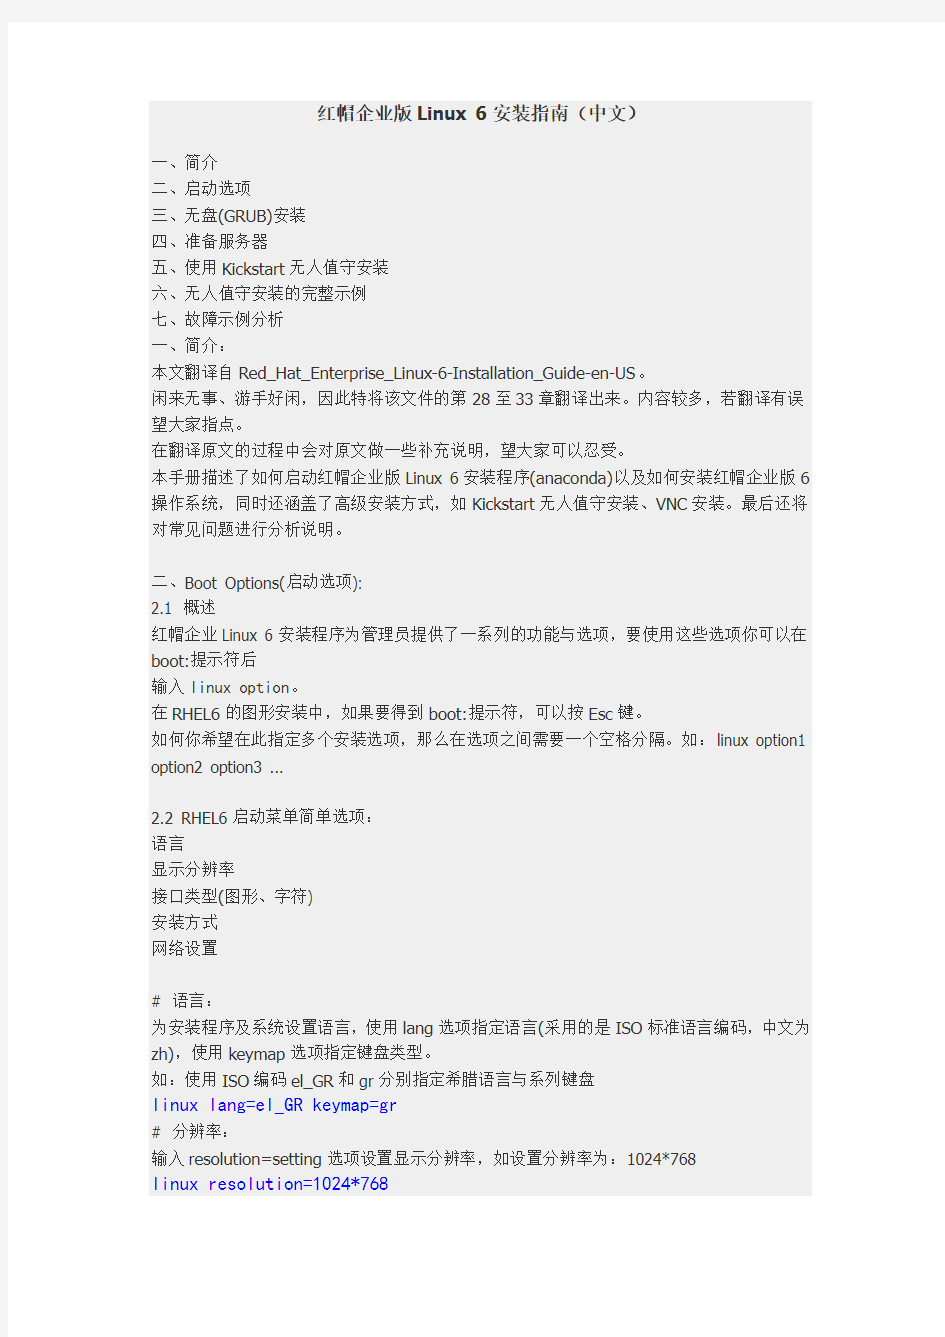 红帽企业版Linux 6安装指南(中文)